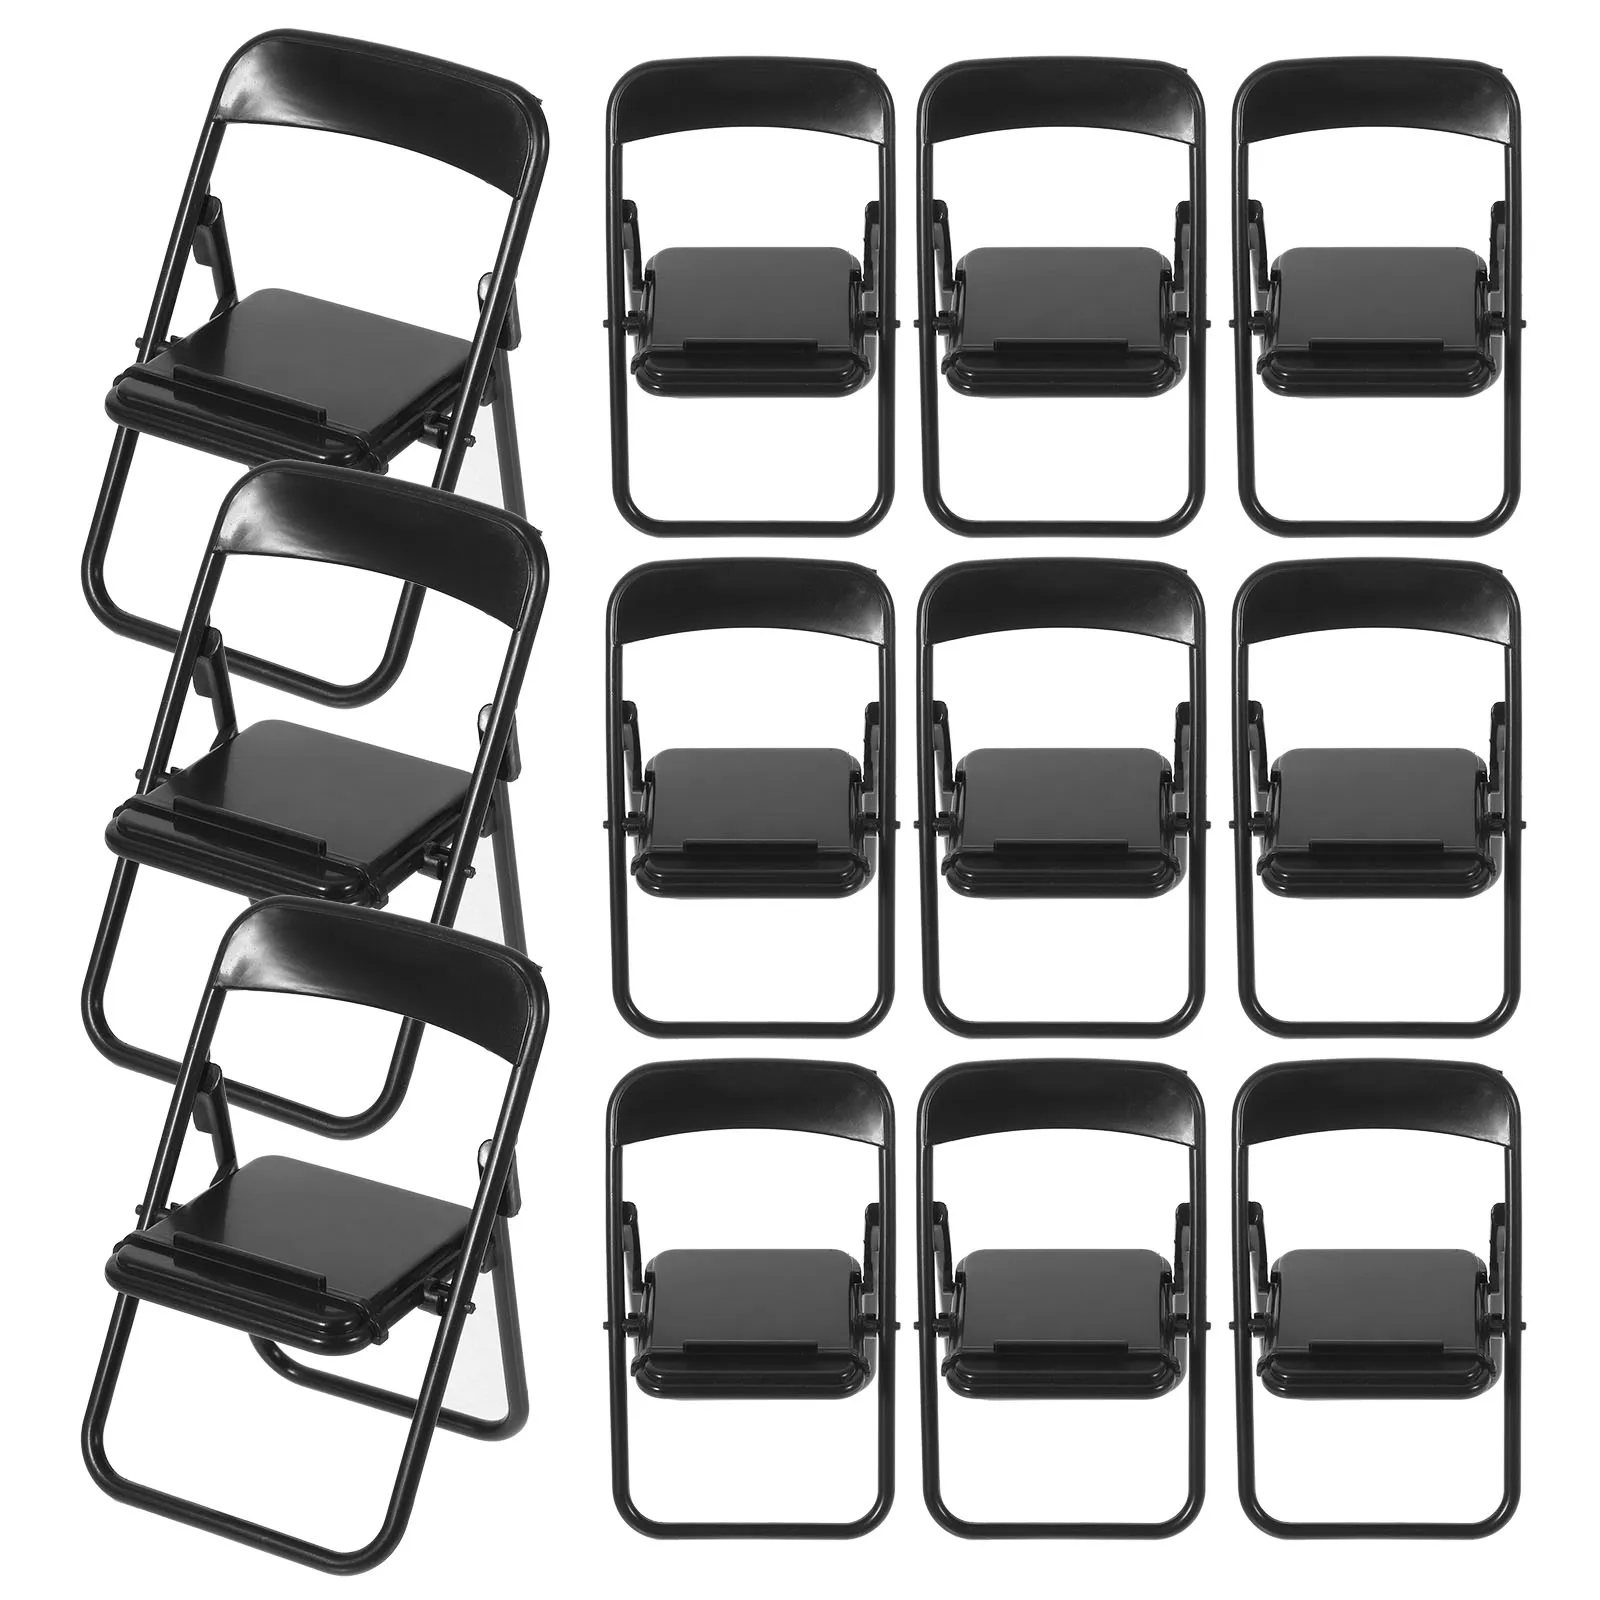 12шт Интересных складных забавных миниатюрных стульев, держателей для мобильных телефонов, подставок для телефонов, мобильных держателей